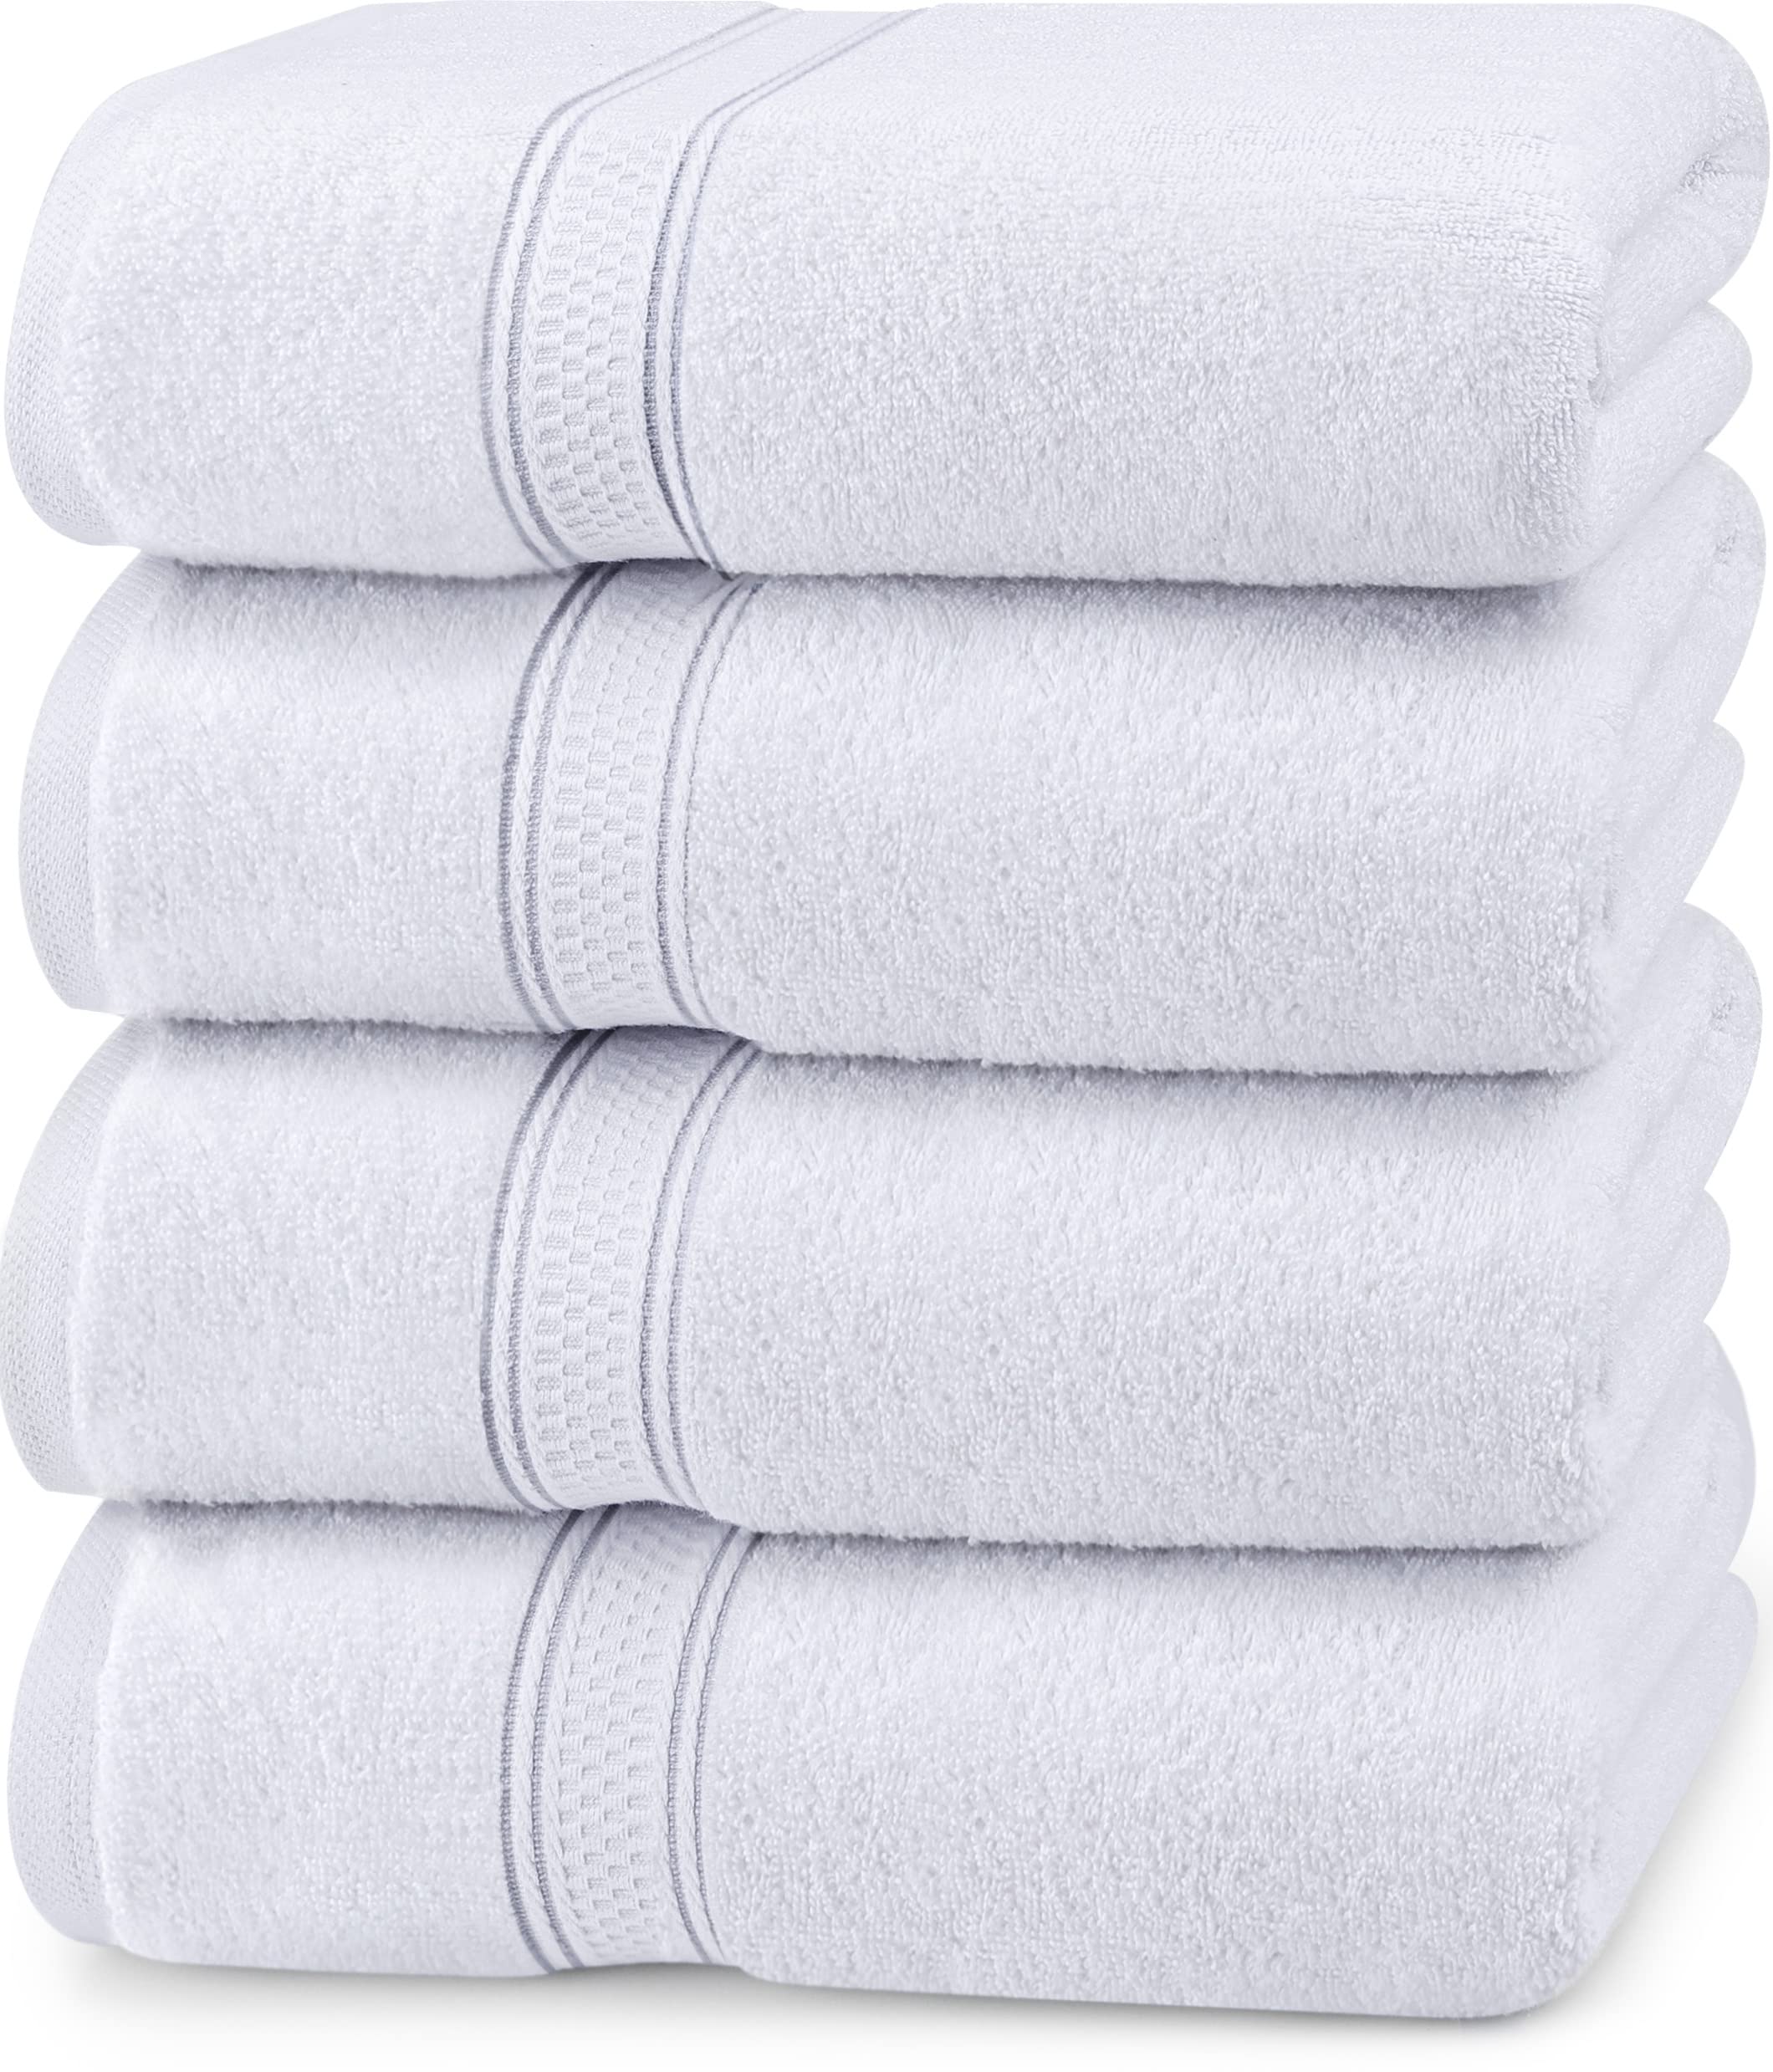 Tendance  Utopia Towels - Lot de 4 Serviettes de Bain luxueuses - 100% Coton filé à l´anneau, séchage Rapide, très absorbantes, Douces au Toucher, parfaites pour Un Usage Quotidien - Blanc r49XggqkQ frais